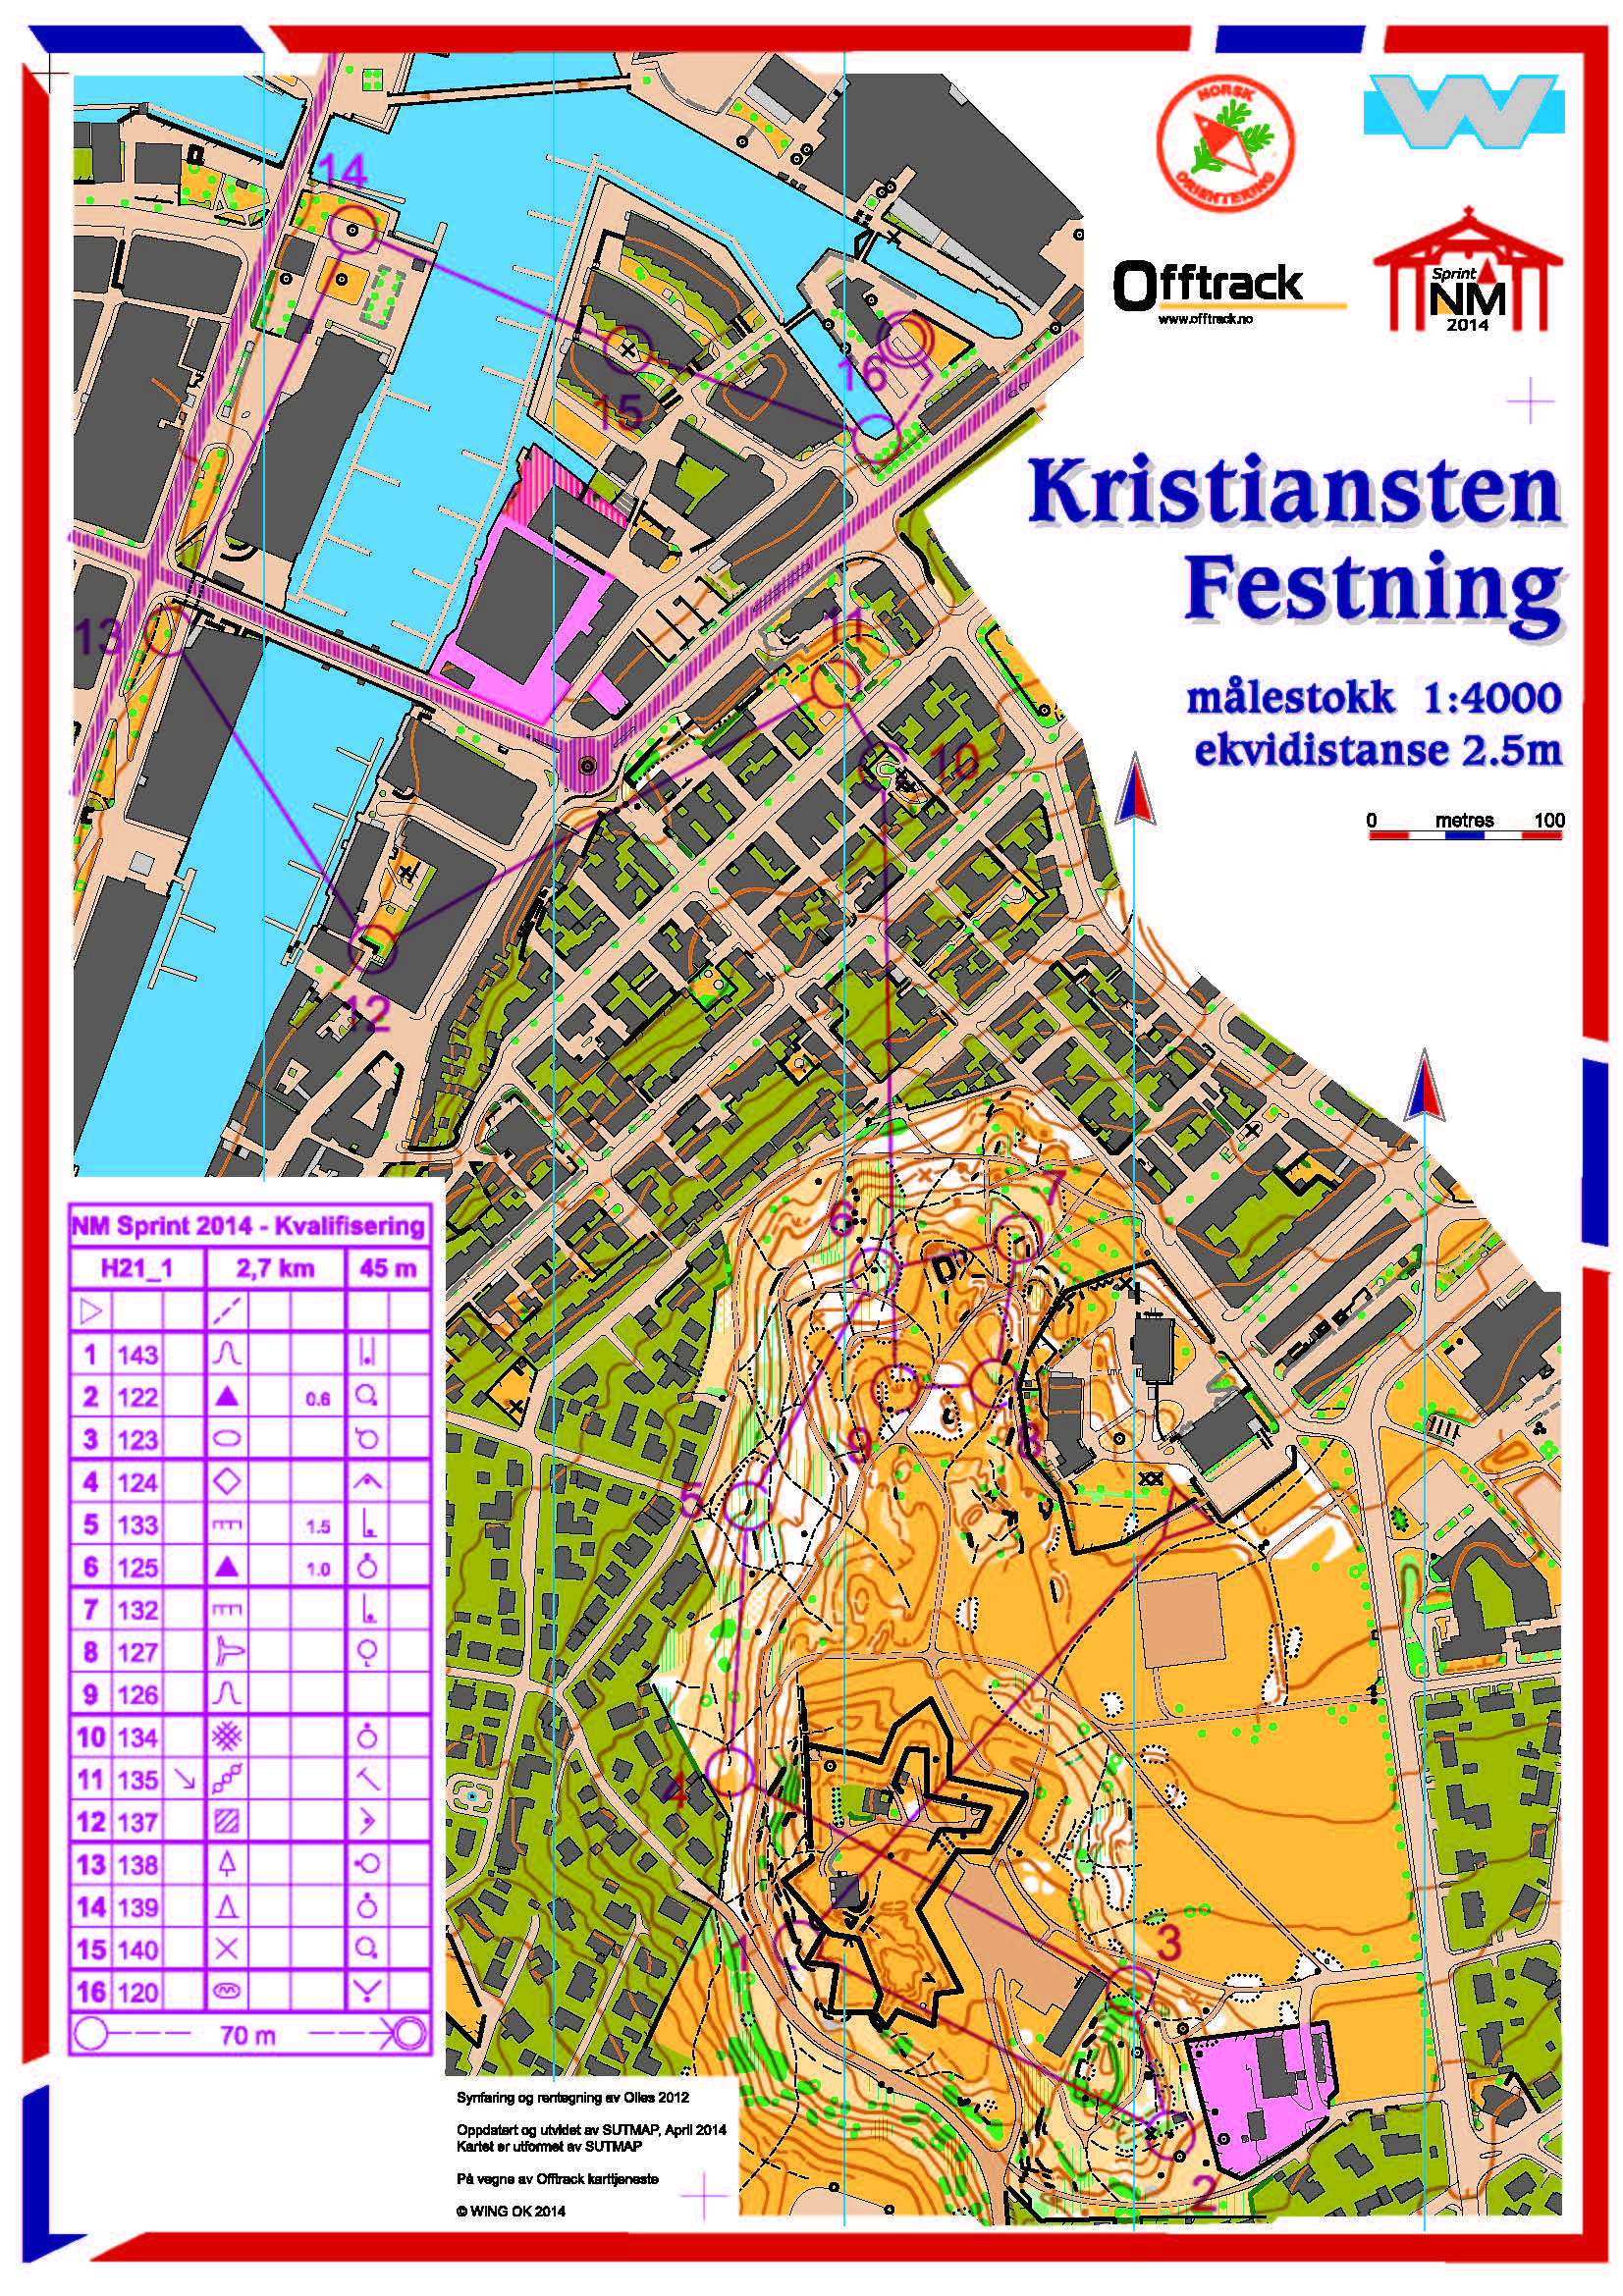 Trondheim Open Sprint (24-05-2014)